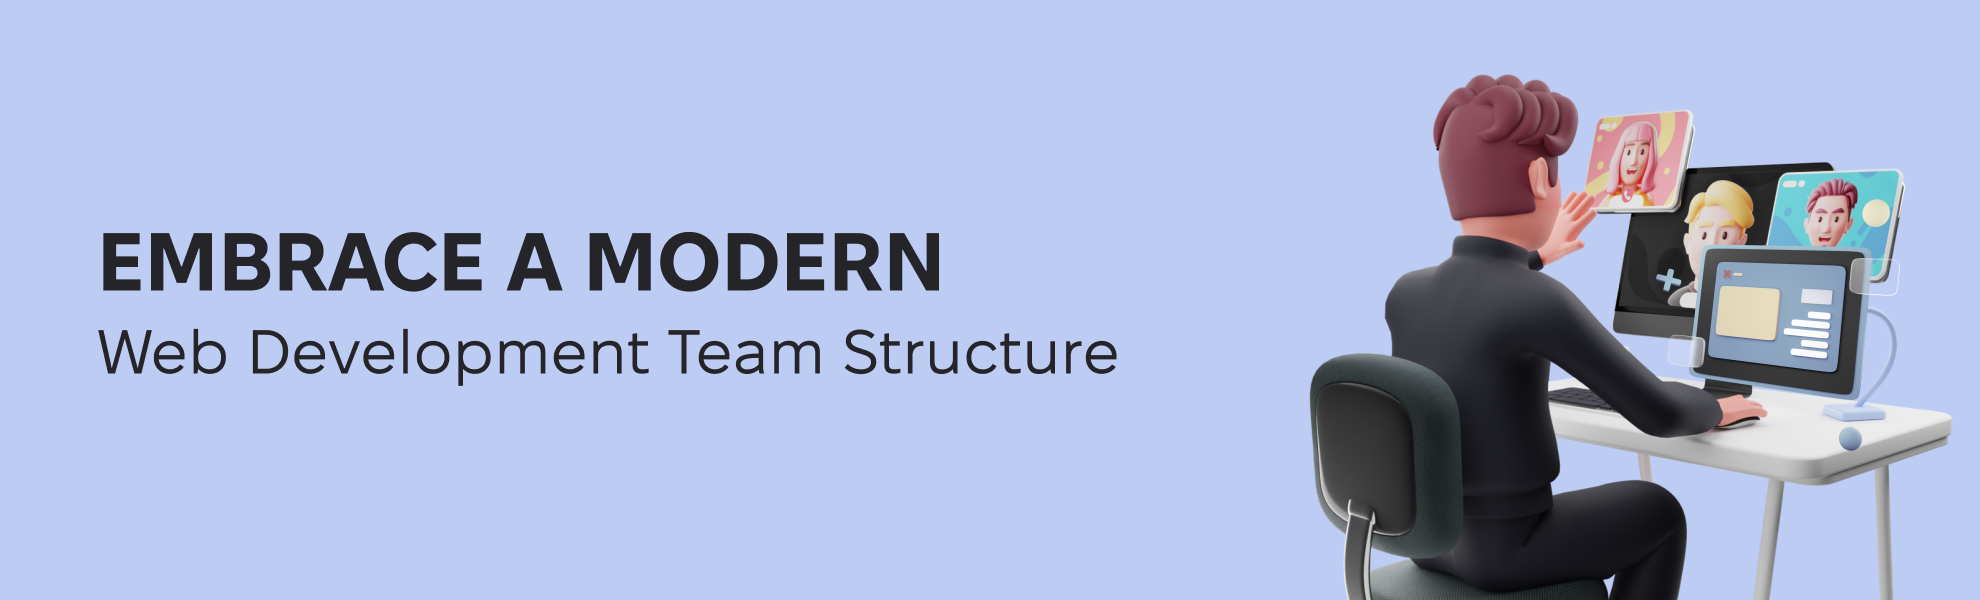 Embrace a Modern Web Development Team Structure